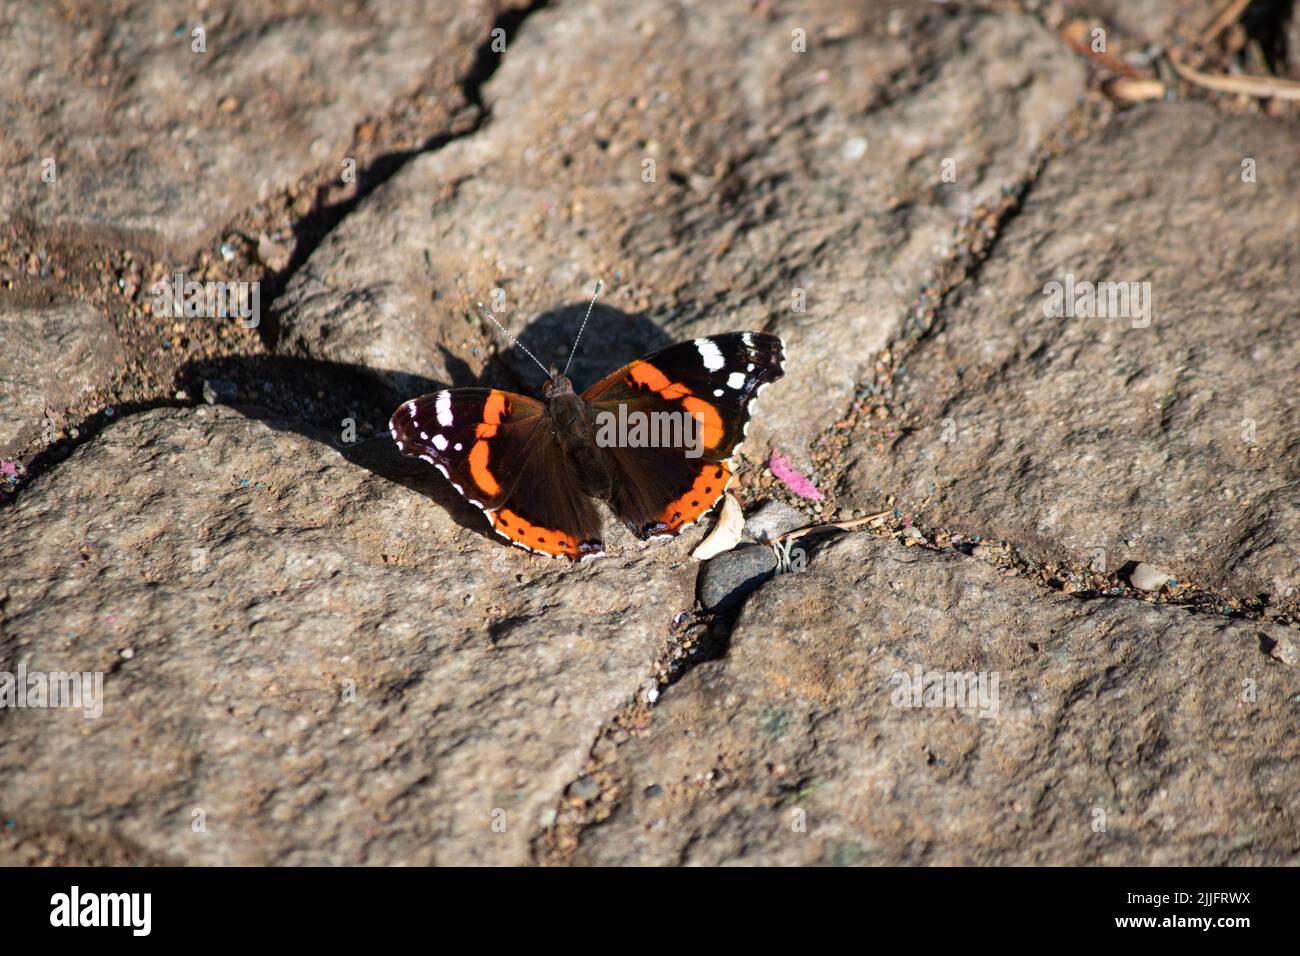 Vanessa atalanta, in Europa als Rote Admiral bekannt. Venessa atalanta ist eine Schmetterlingsart mit schwarzen Flügeln, orangefarbenen Streifen und weißen Flecken. Stockfoto